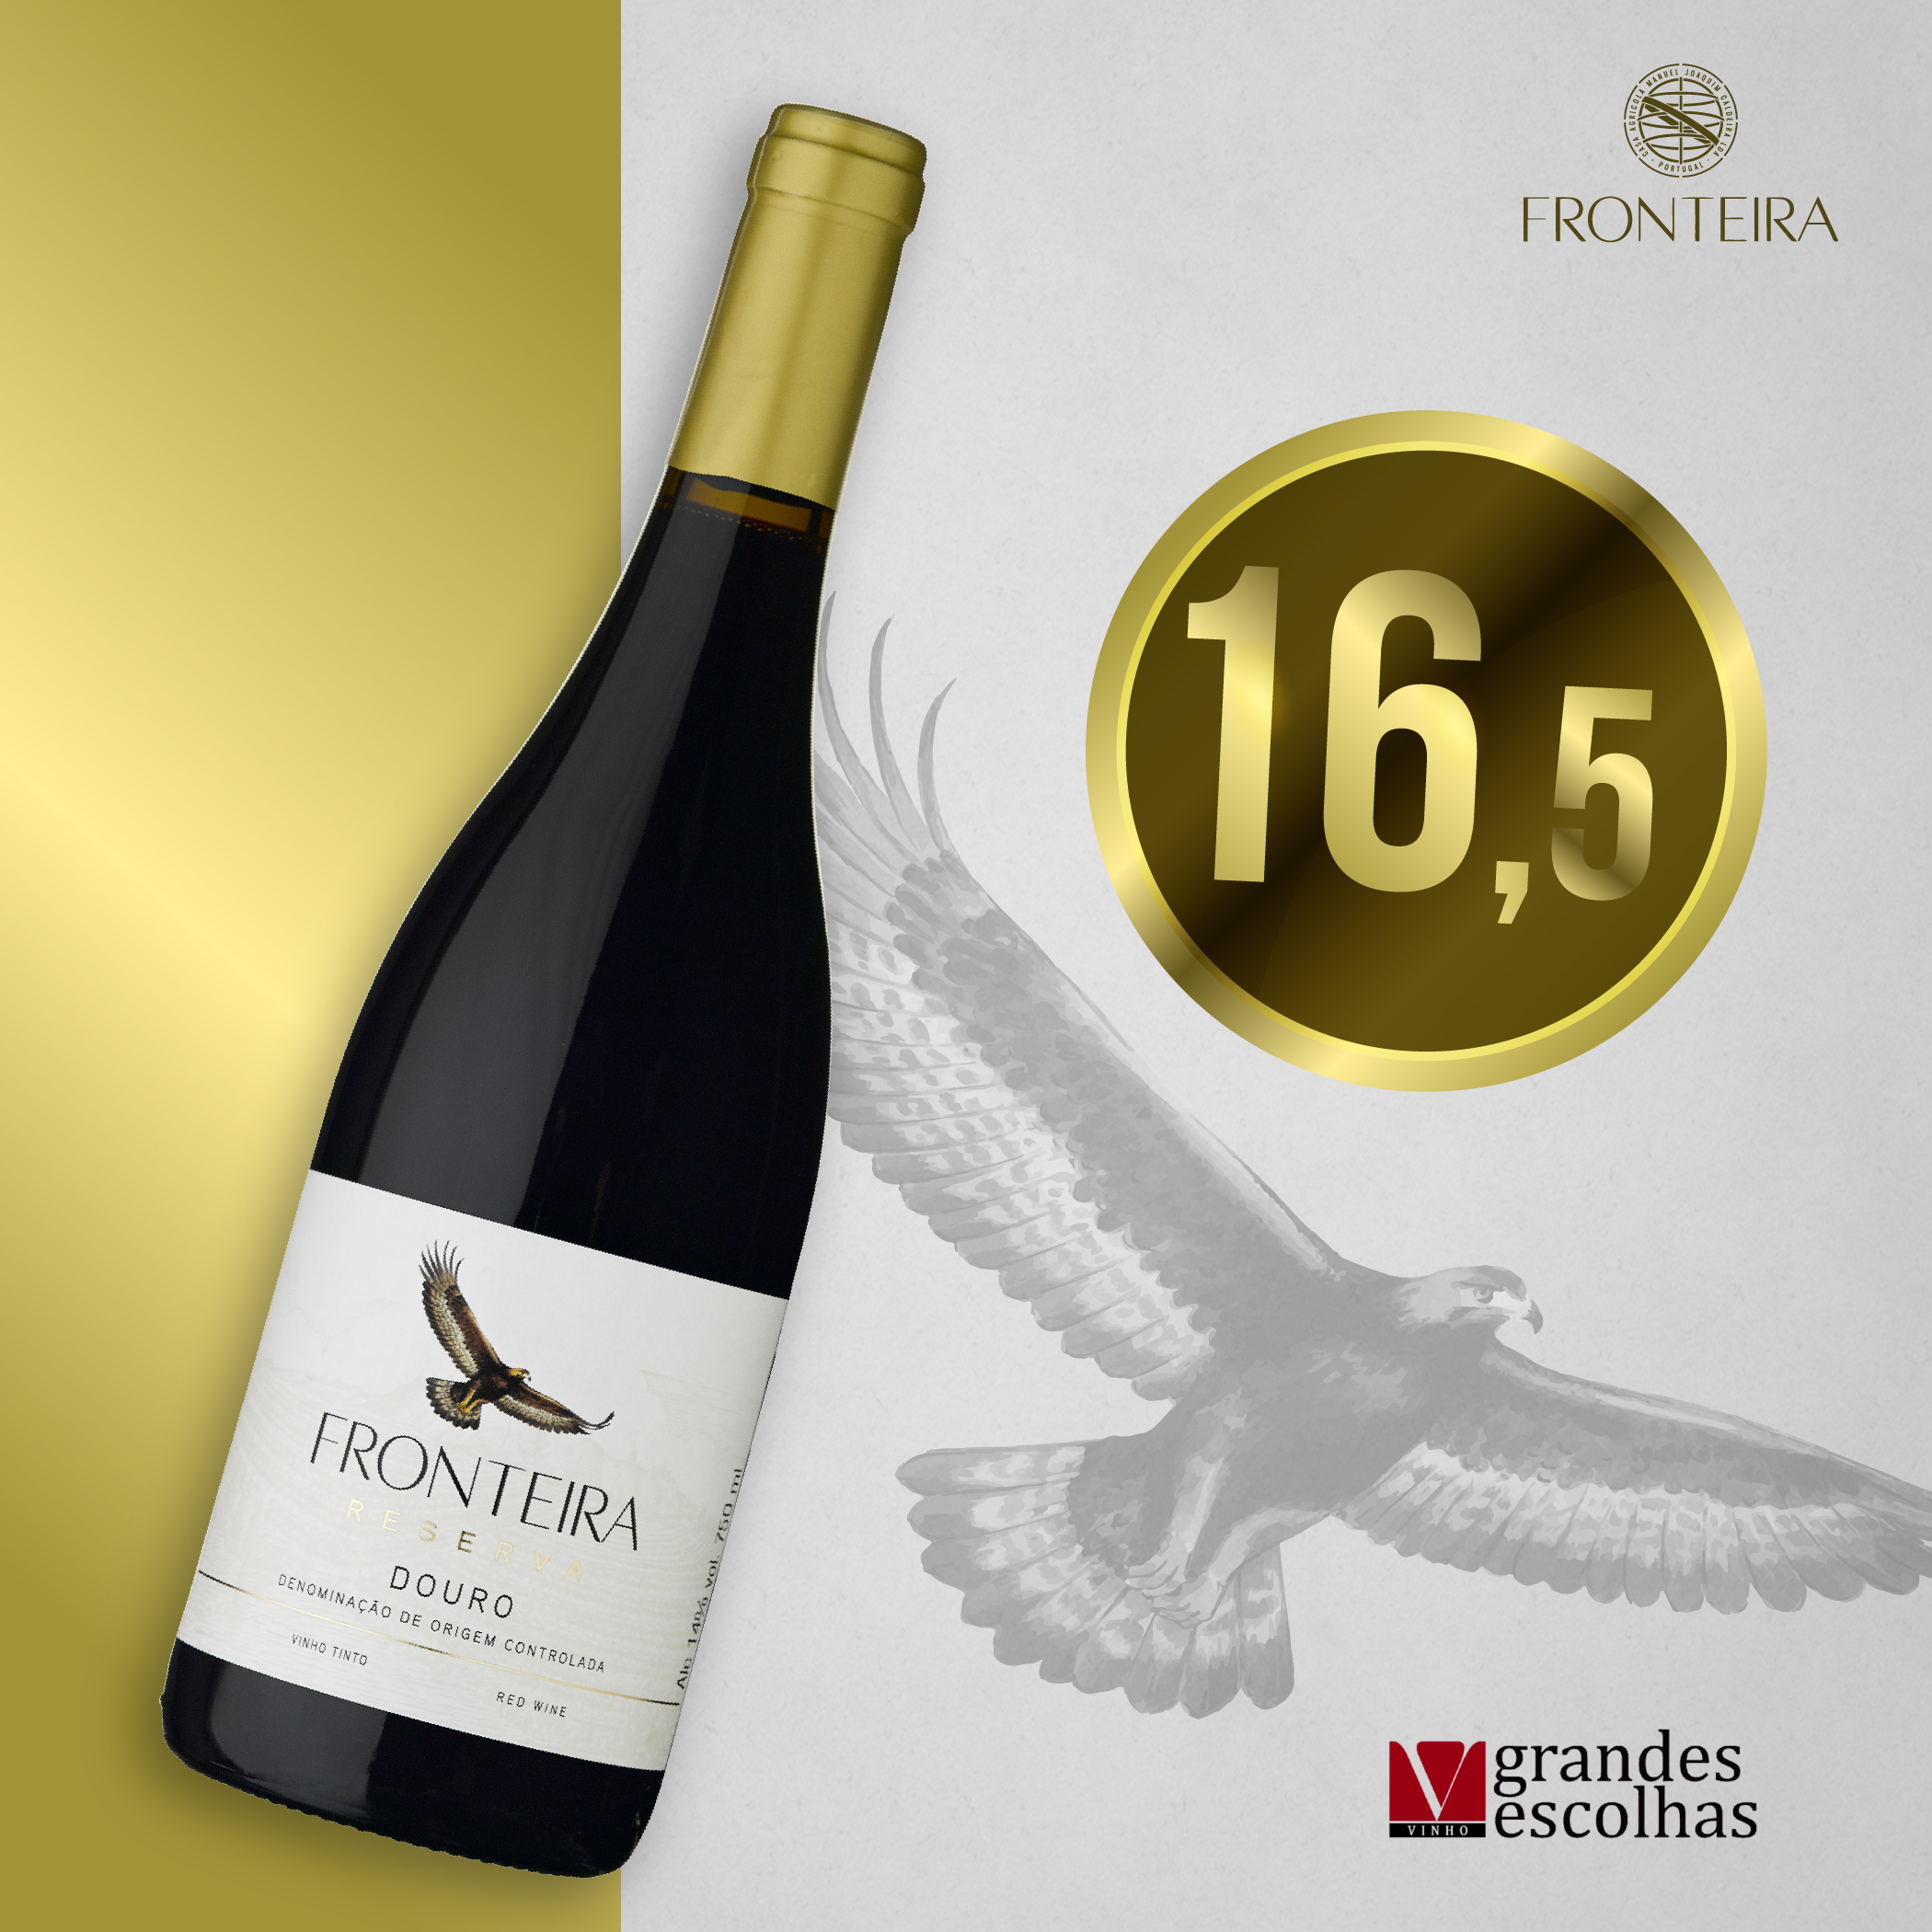 Fronteira Tinto recebe cotação de 16,5 pela Vinho Grandes Escolhas